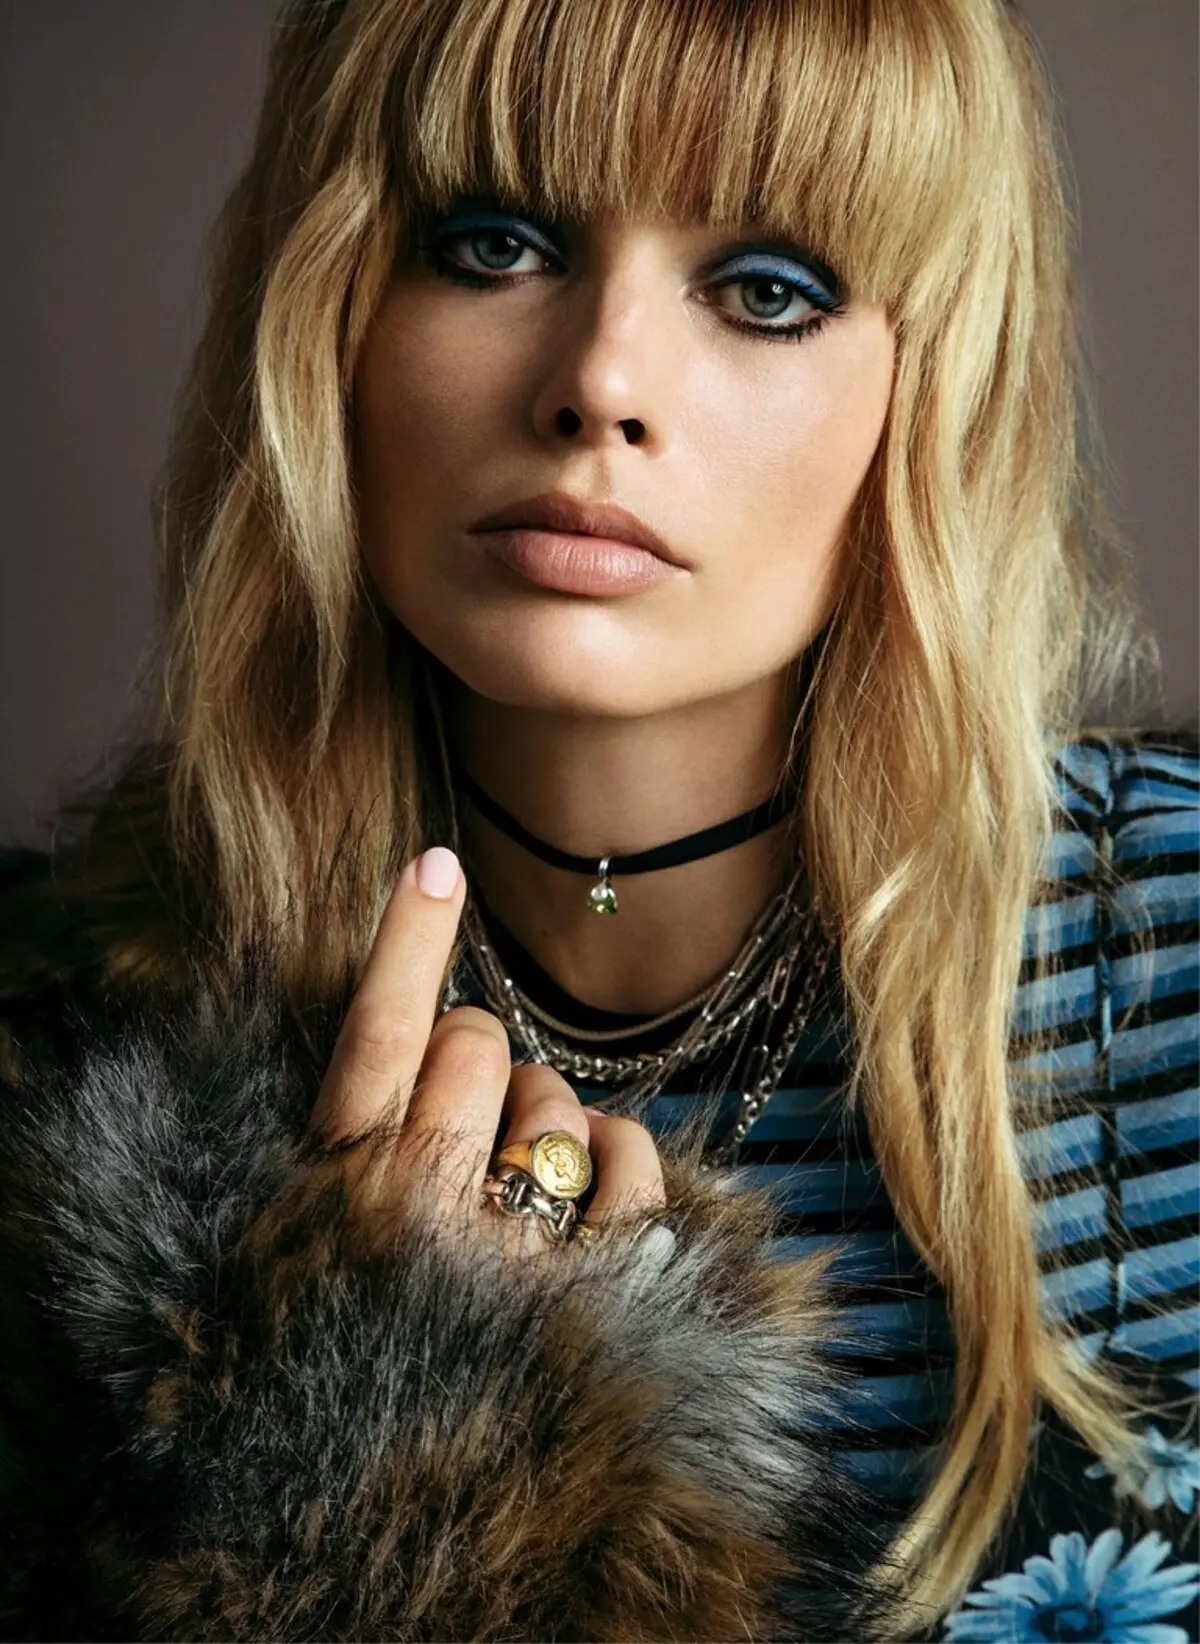 Margo Robbie fotografijoje fotografuojant Vogue: 